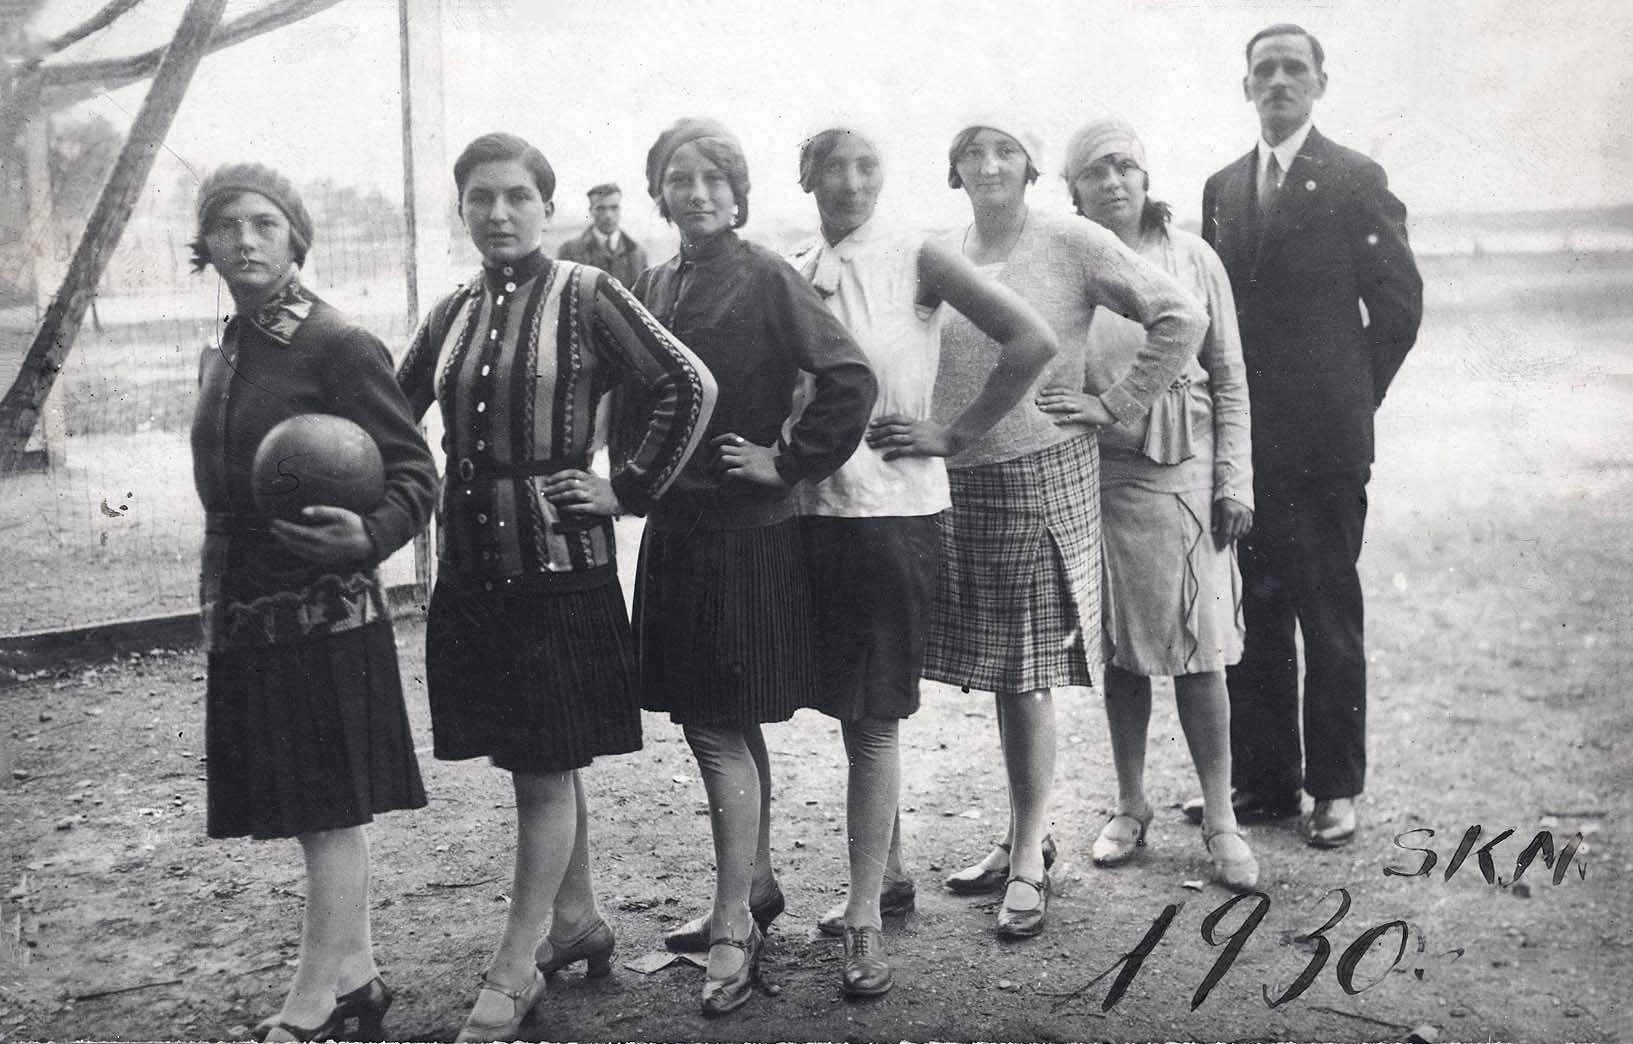 Czechoslovakia, 1930, a girls’ football team and their coach